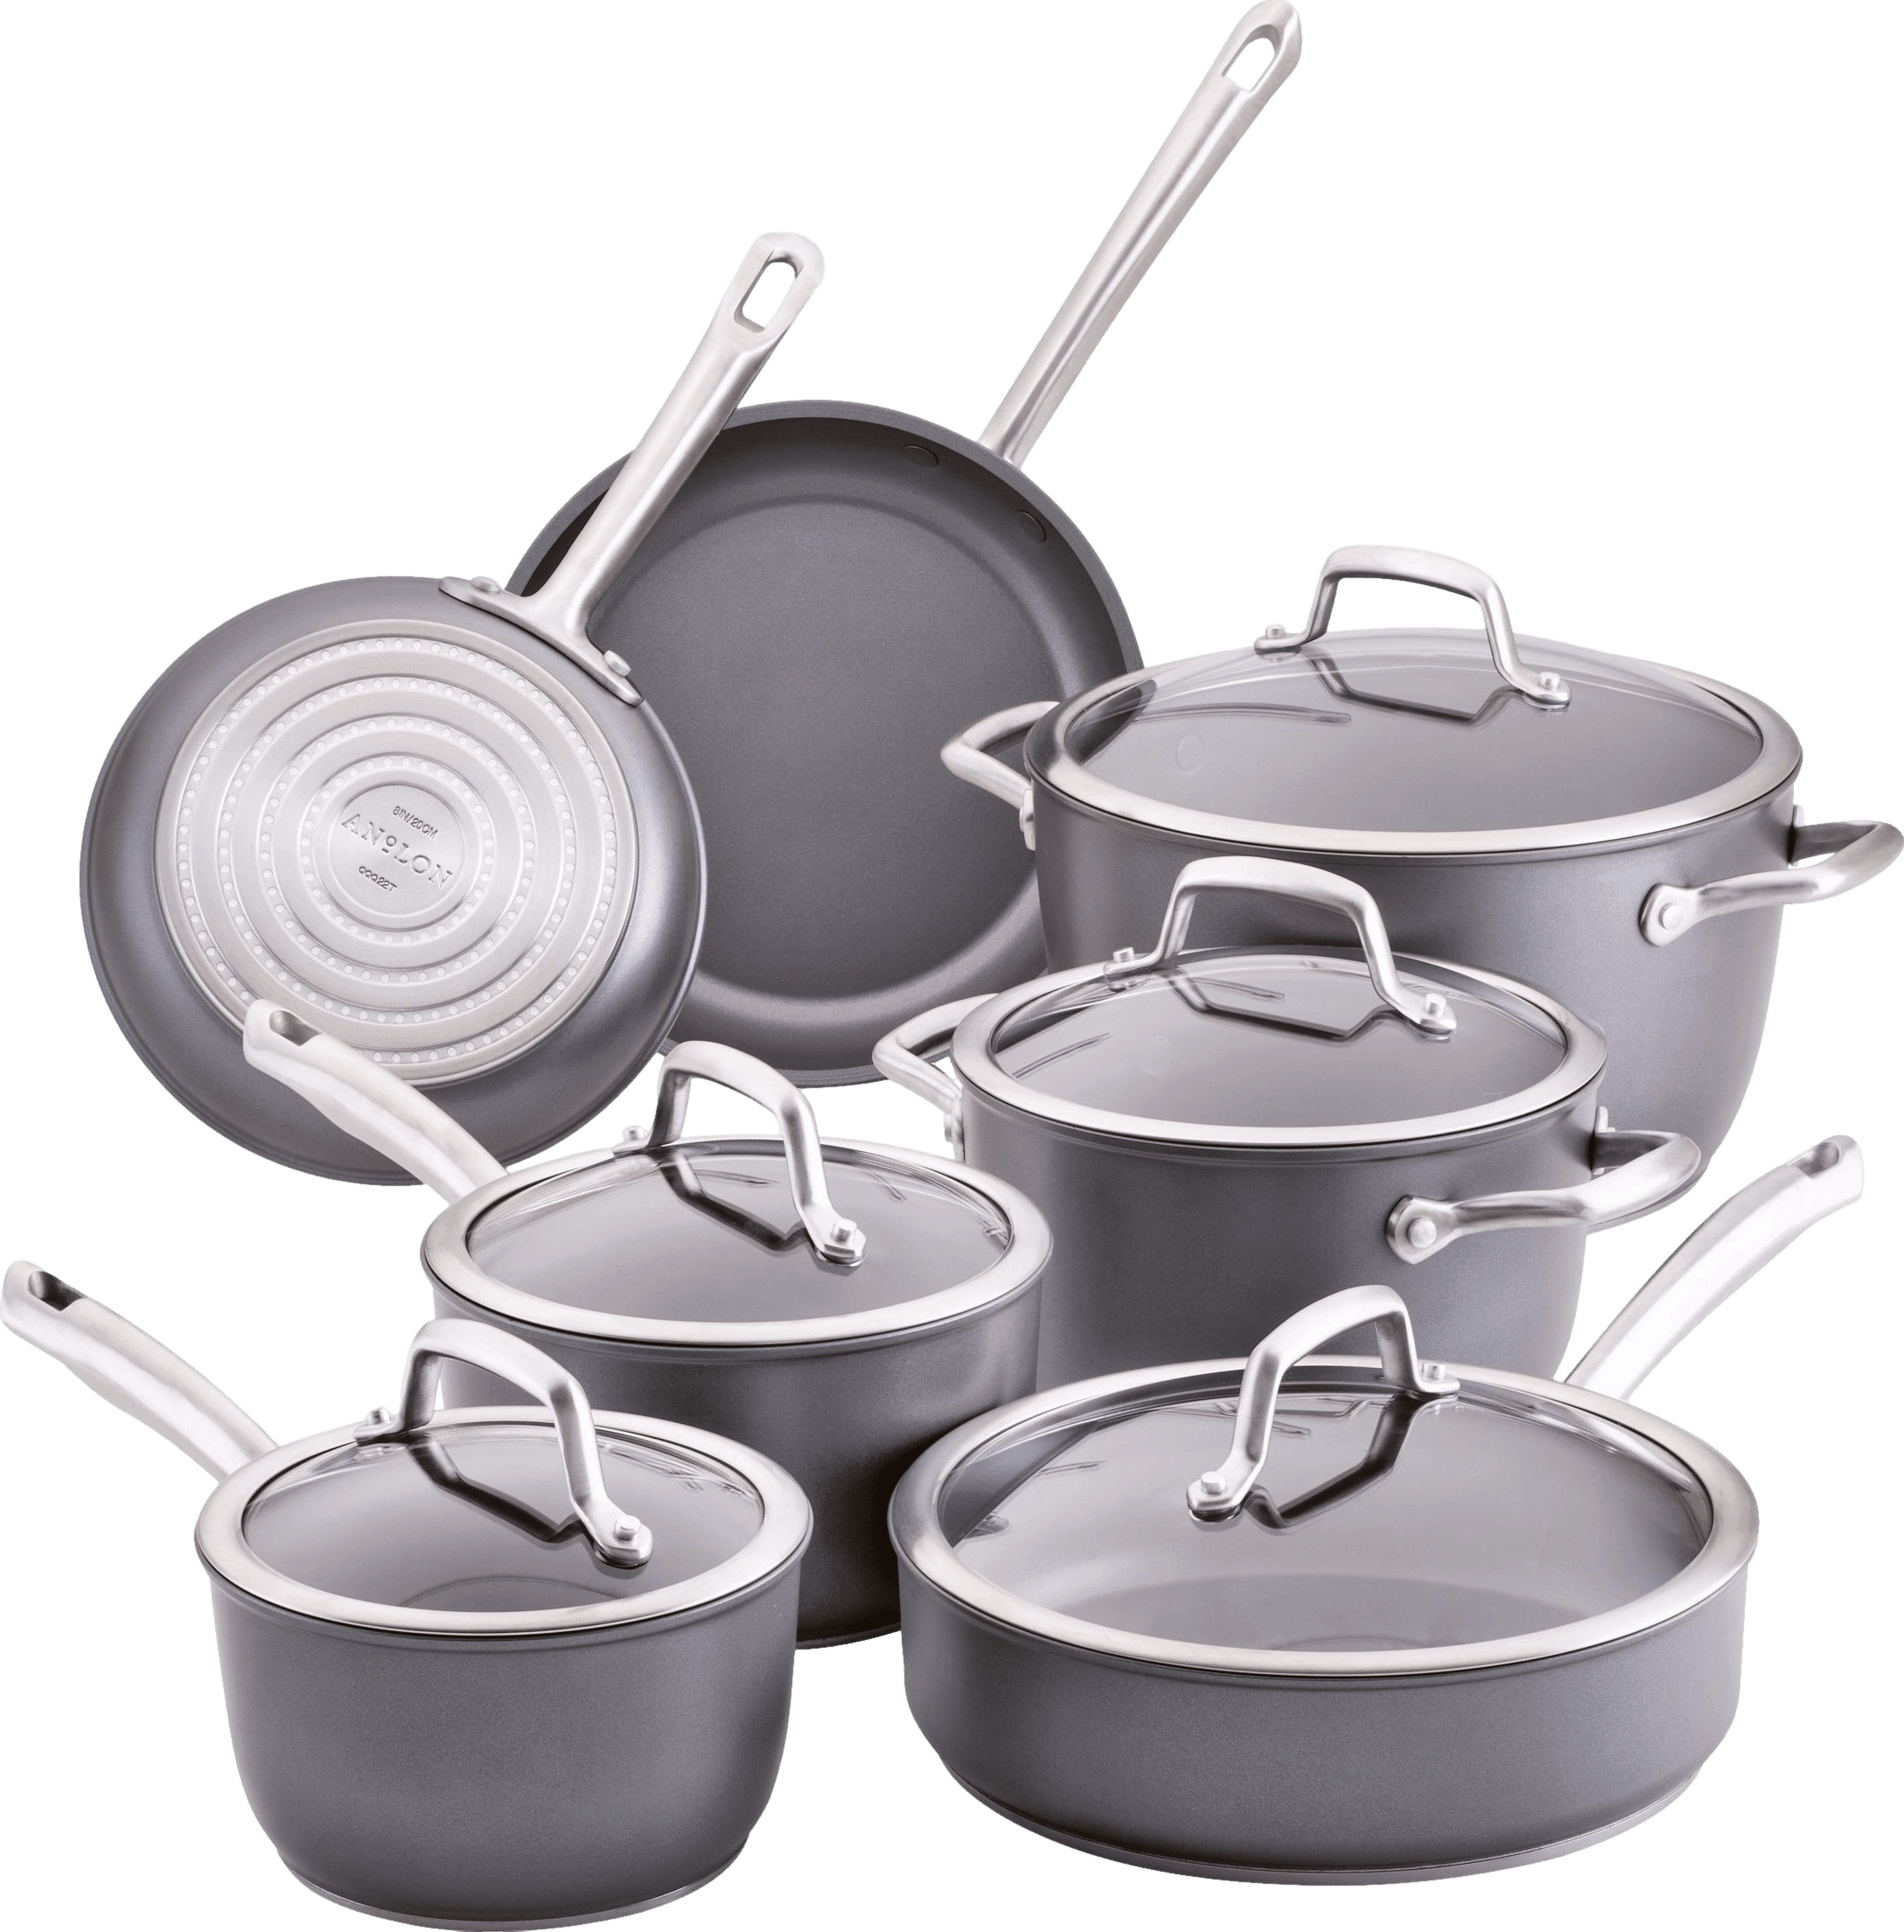 Nonstick Cookware Set,12 Piece Pots and Pans Set,Non Stick Cooking Set